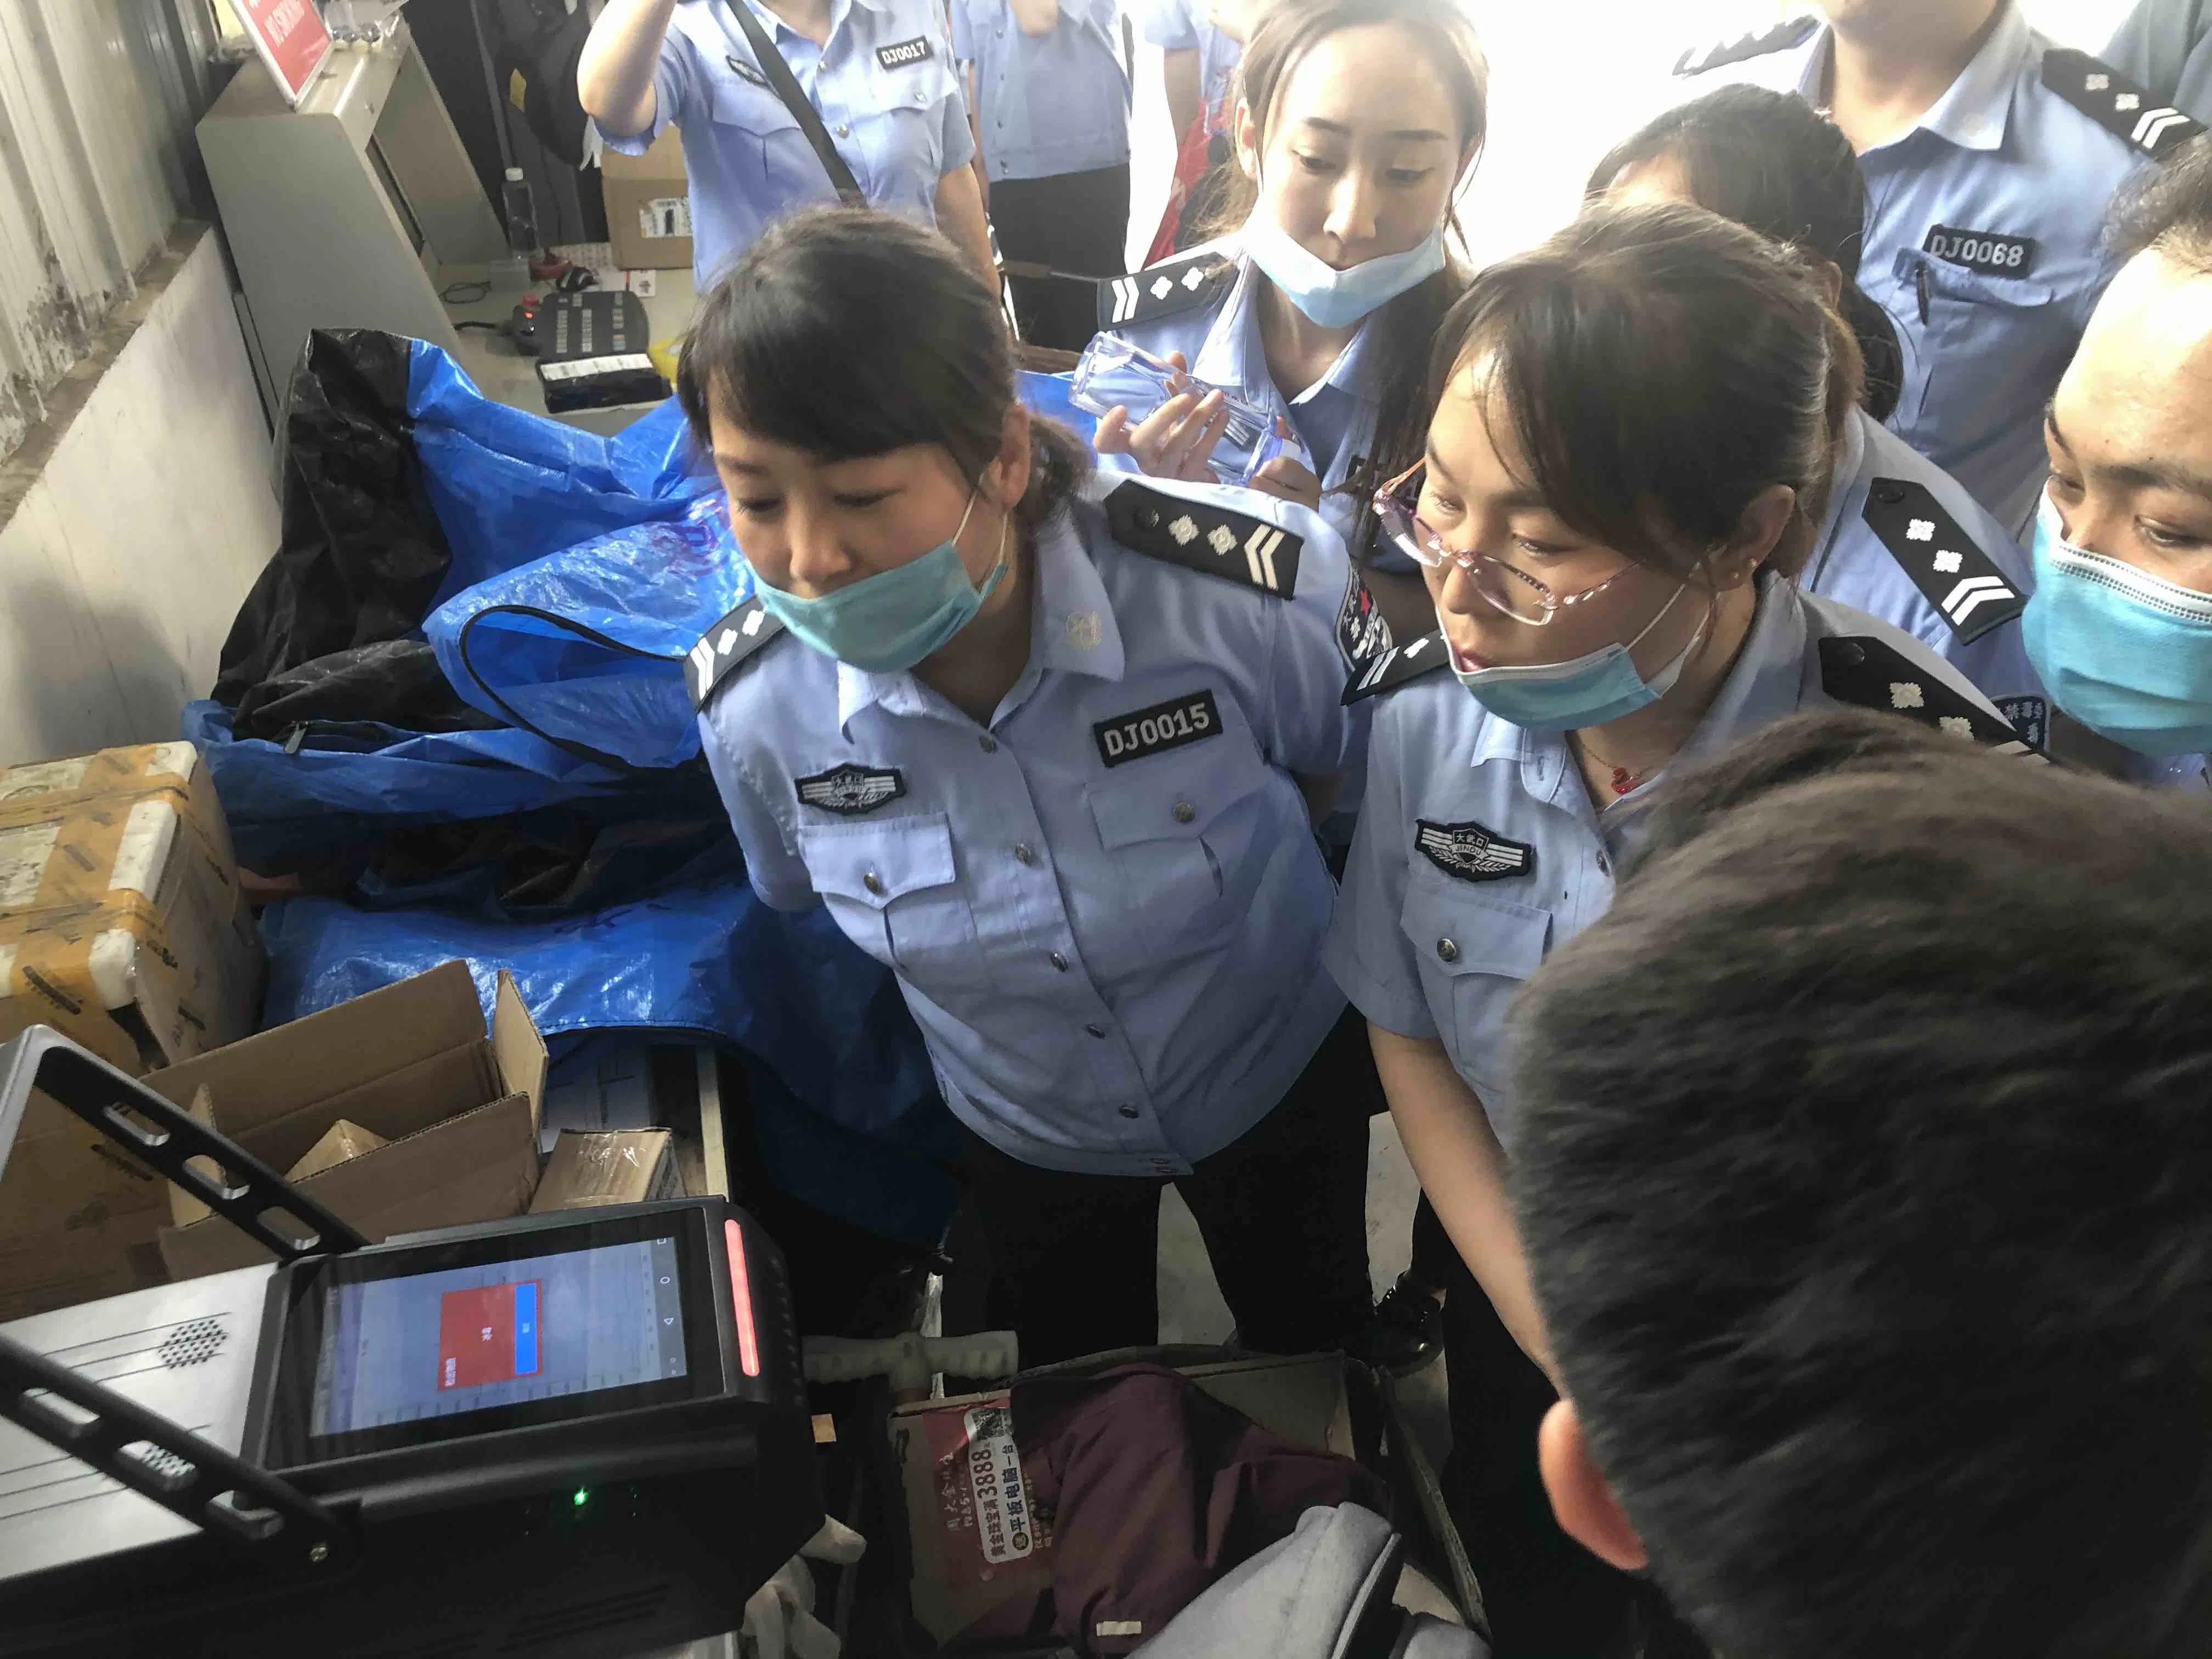 Le mode Double portable explosif et drogues pour la sécurité de l'inspection du détecteur à l'aéroport